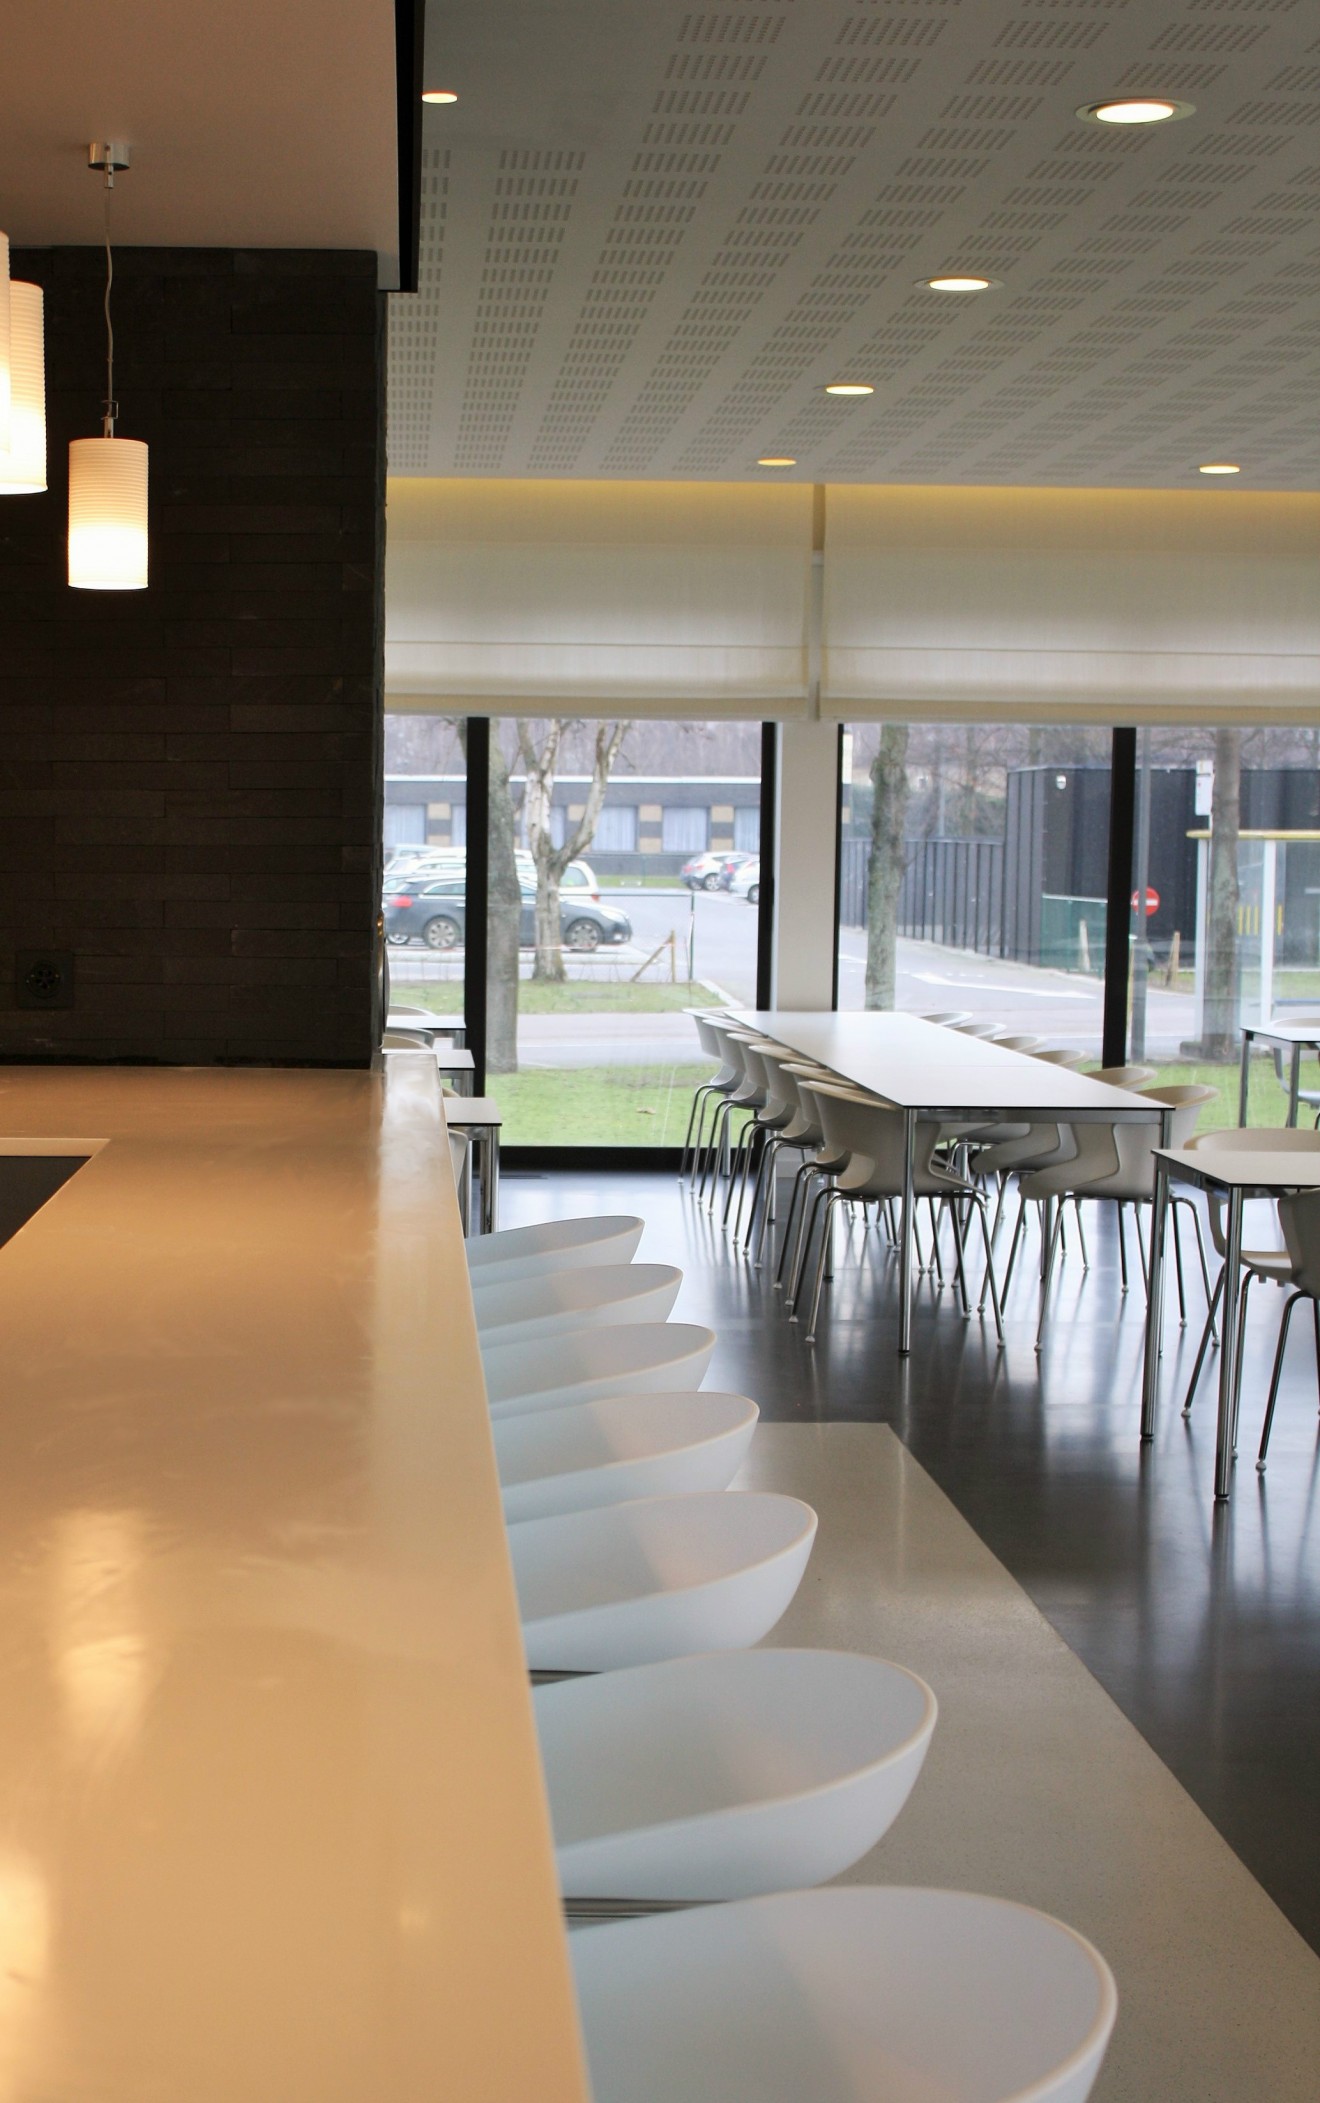 Architect- en ingenieursbureau Andries & Vuylsteke - Renovatie ziekenhuisrestaurant met vip ruimte.